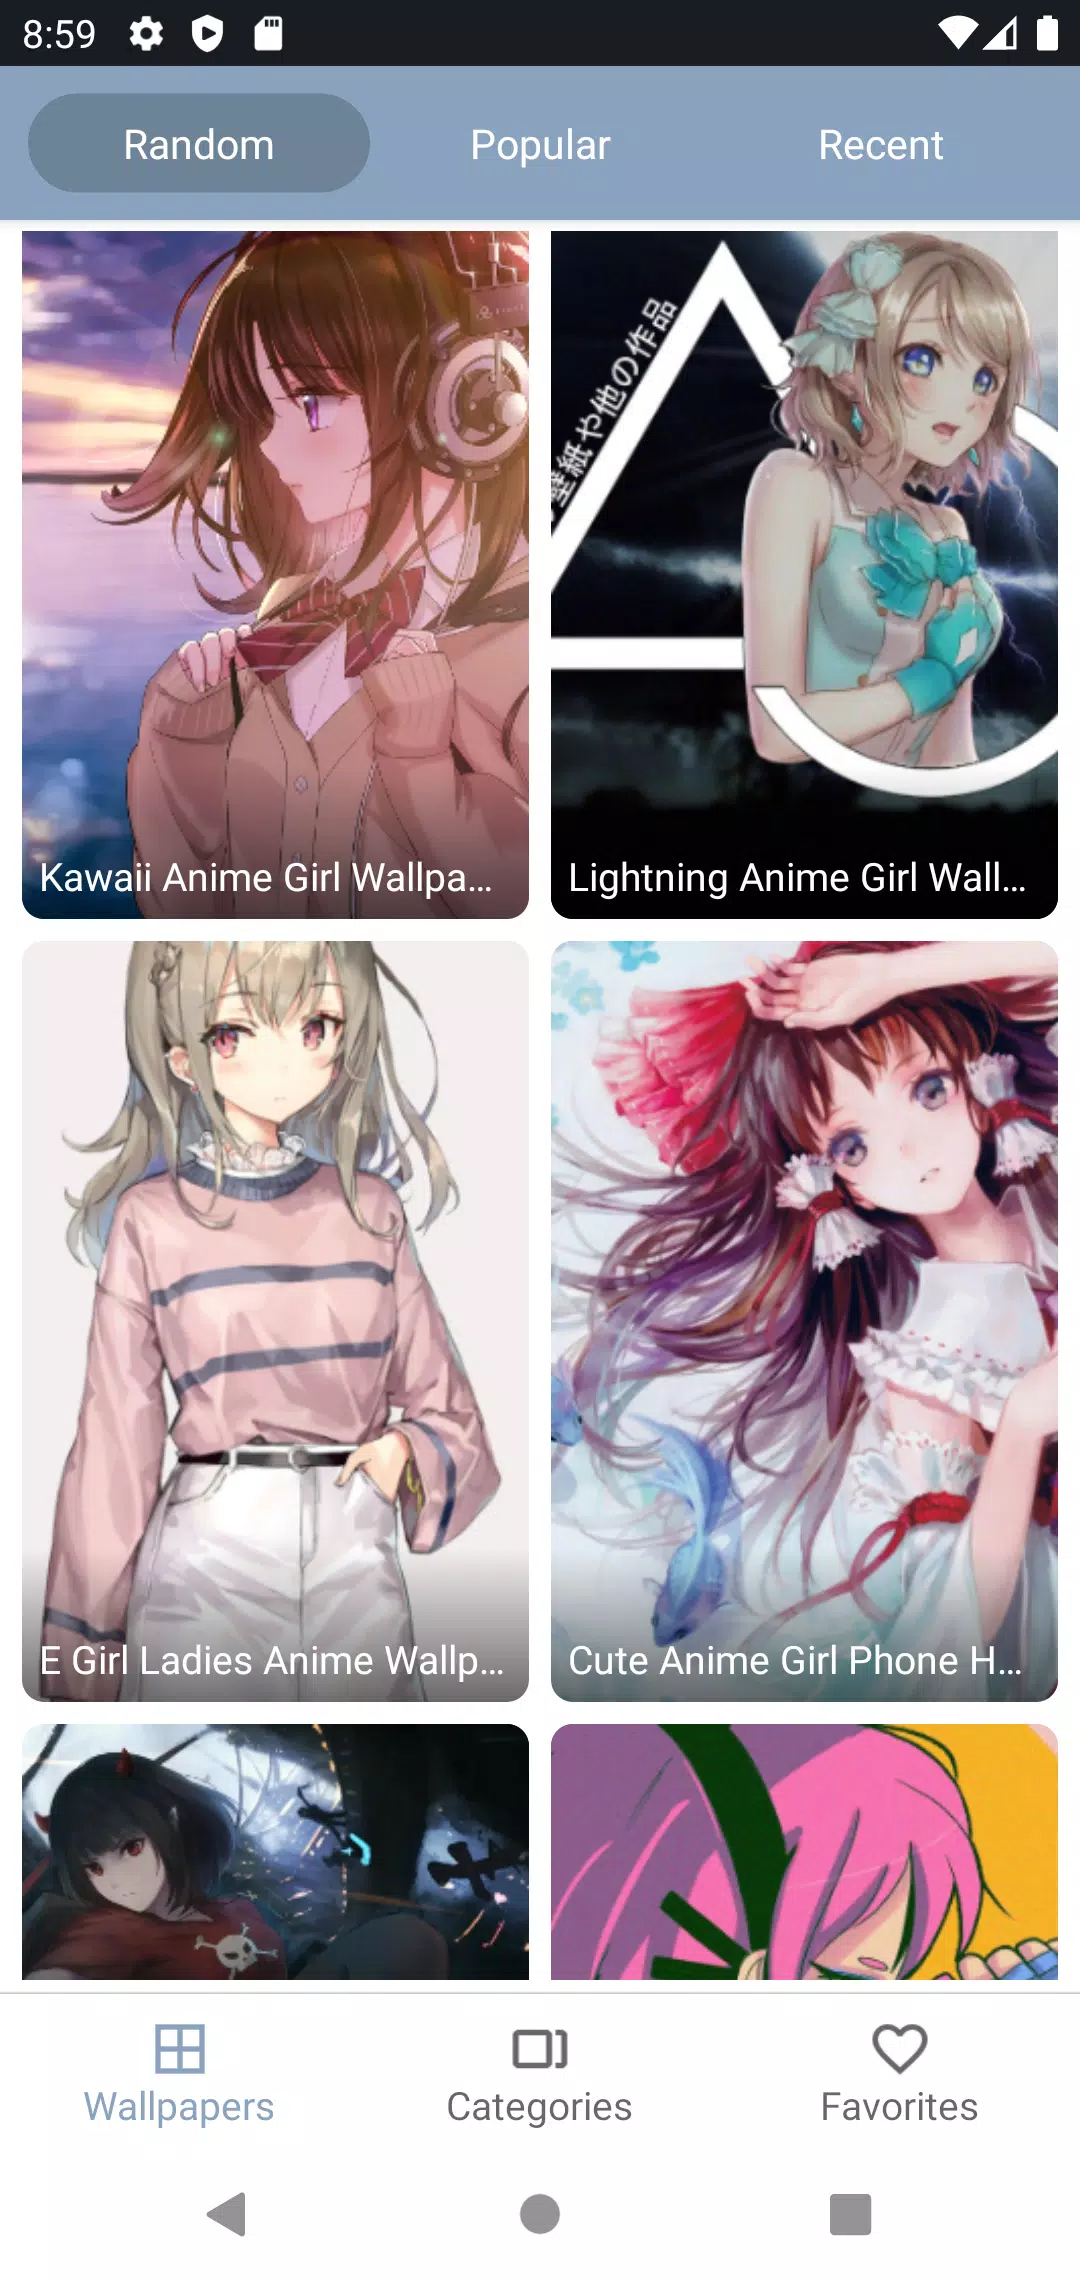 Kawaii Animes: Anime Latino APK (Android App) - Free Download